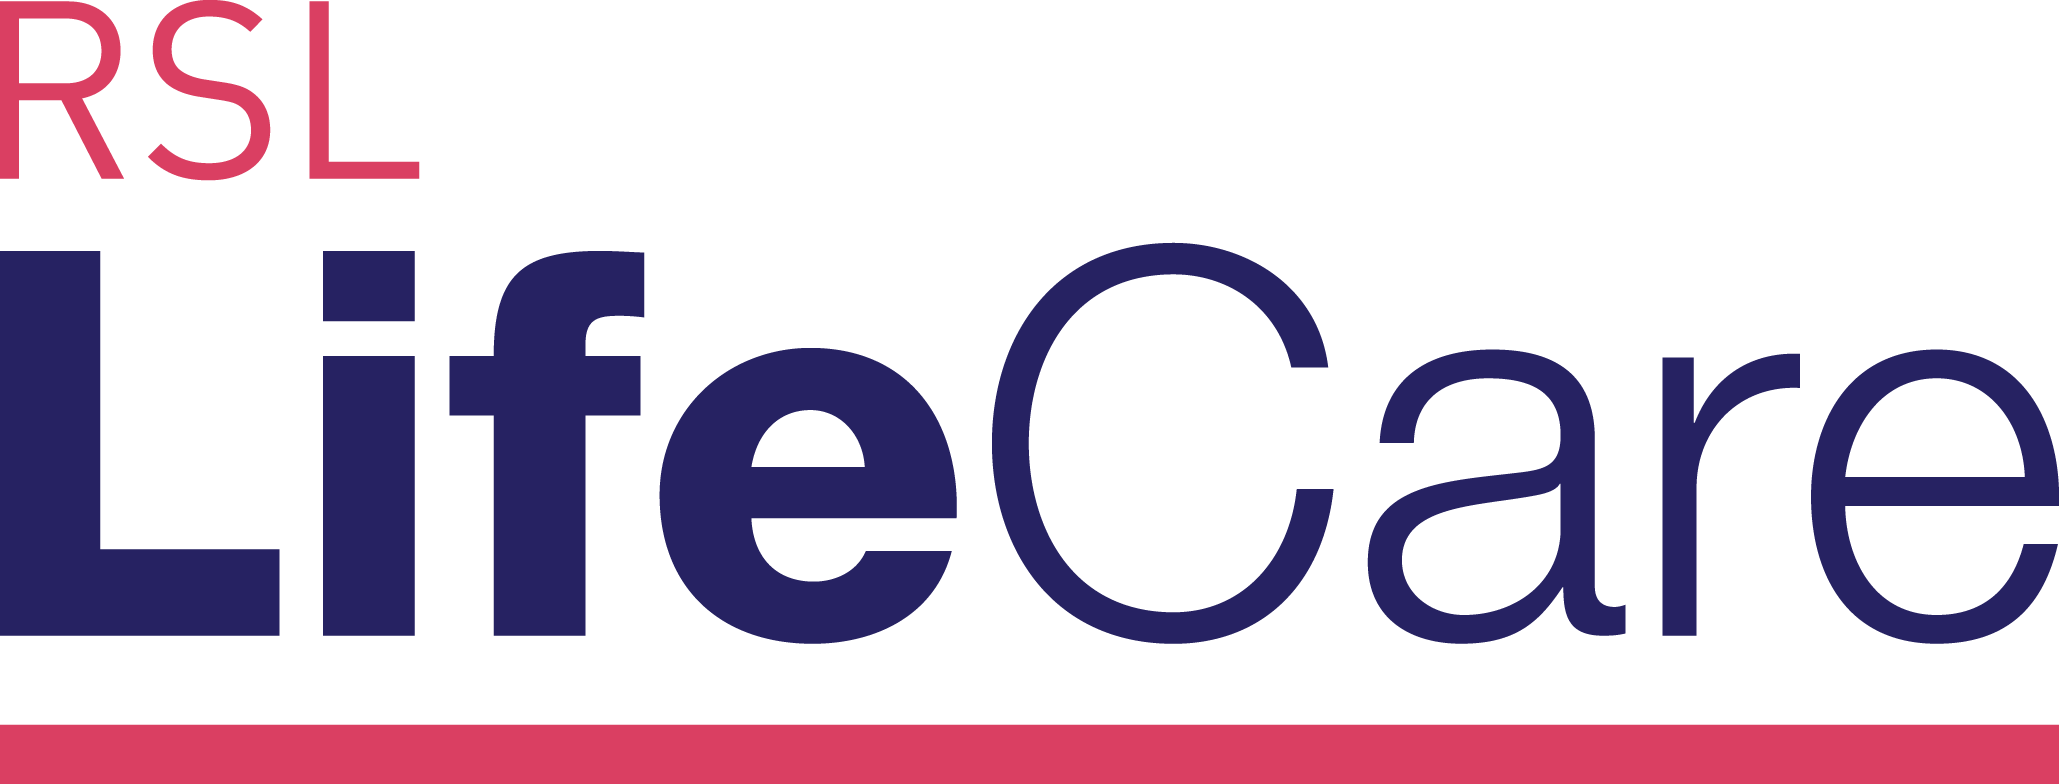 RSL LifeCare Patrick Bugden VC Gardens logo